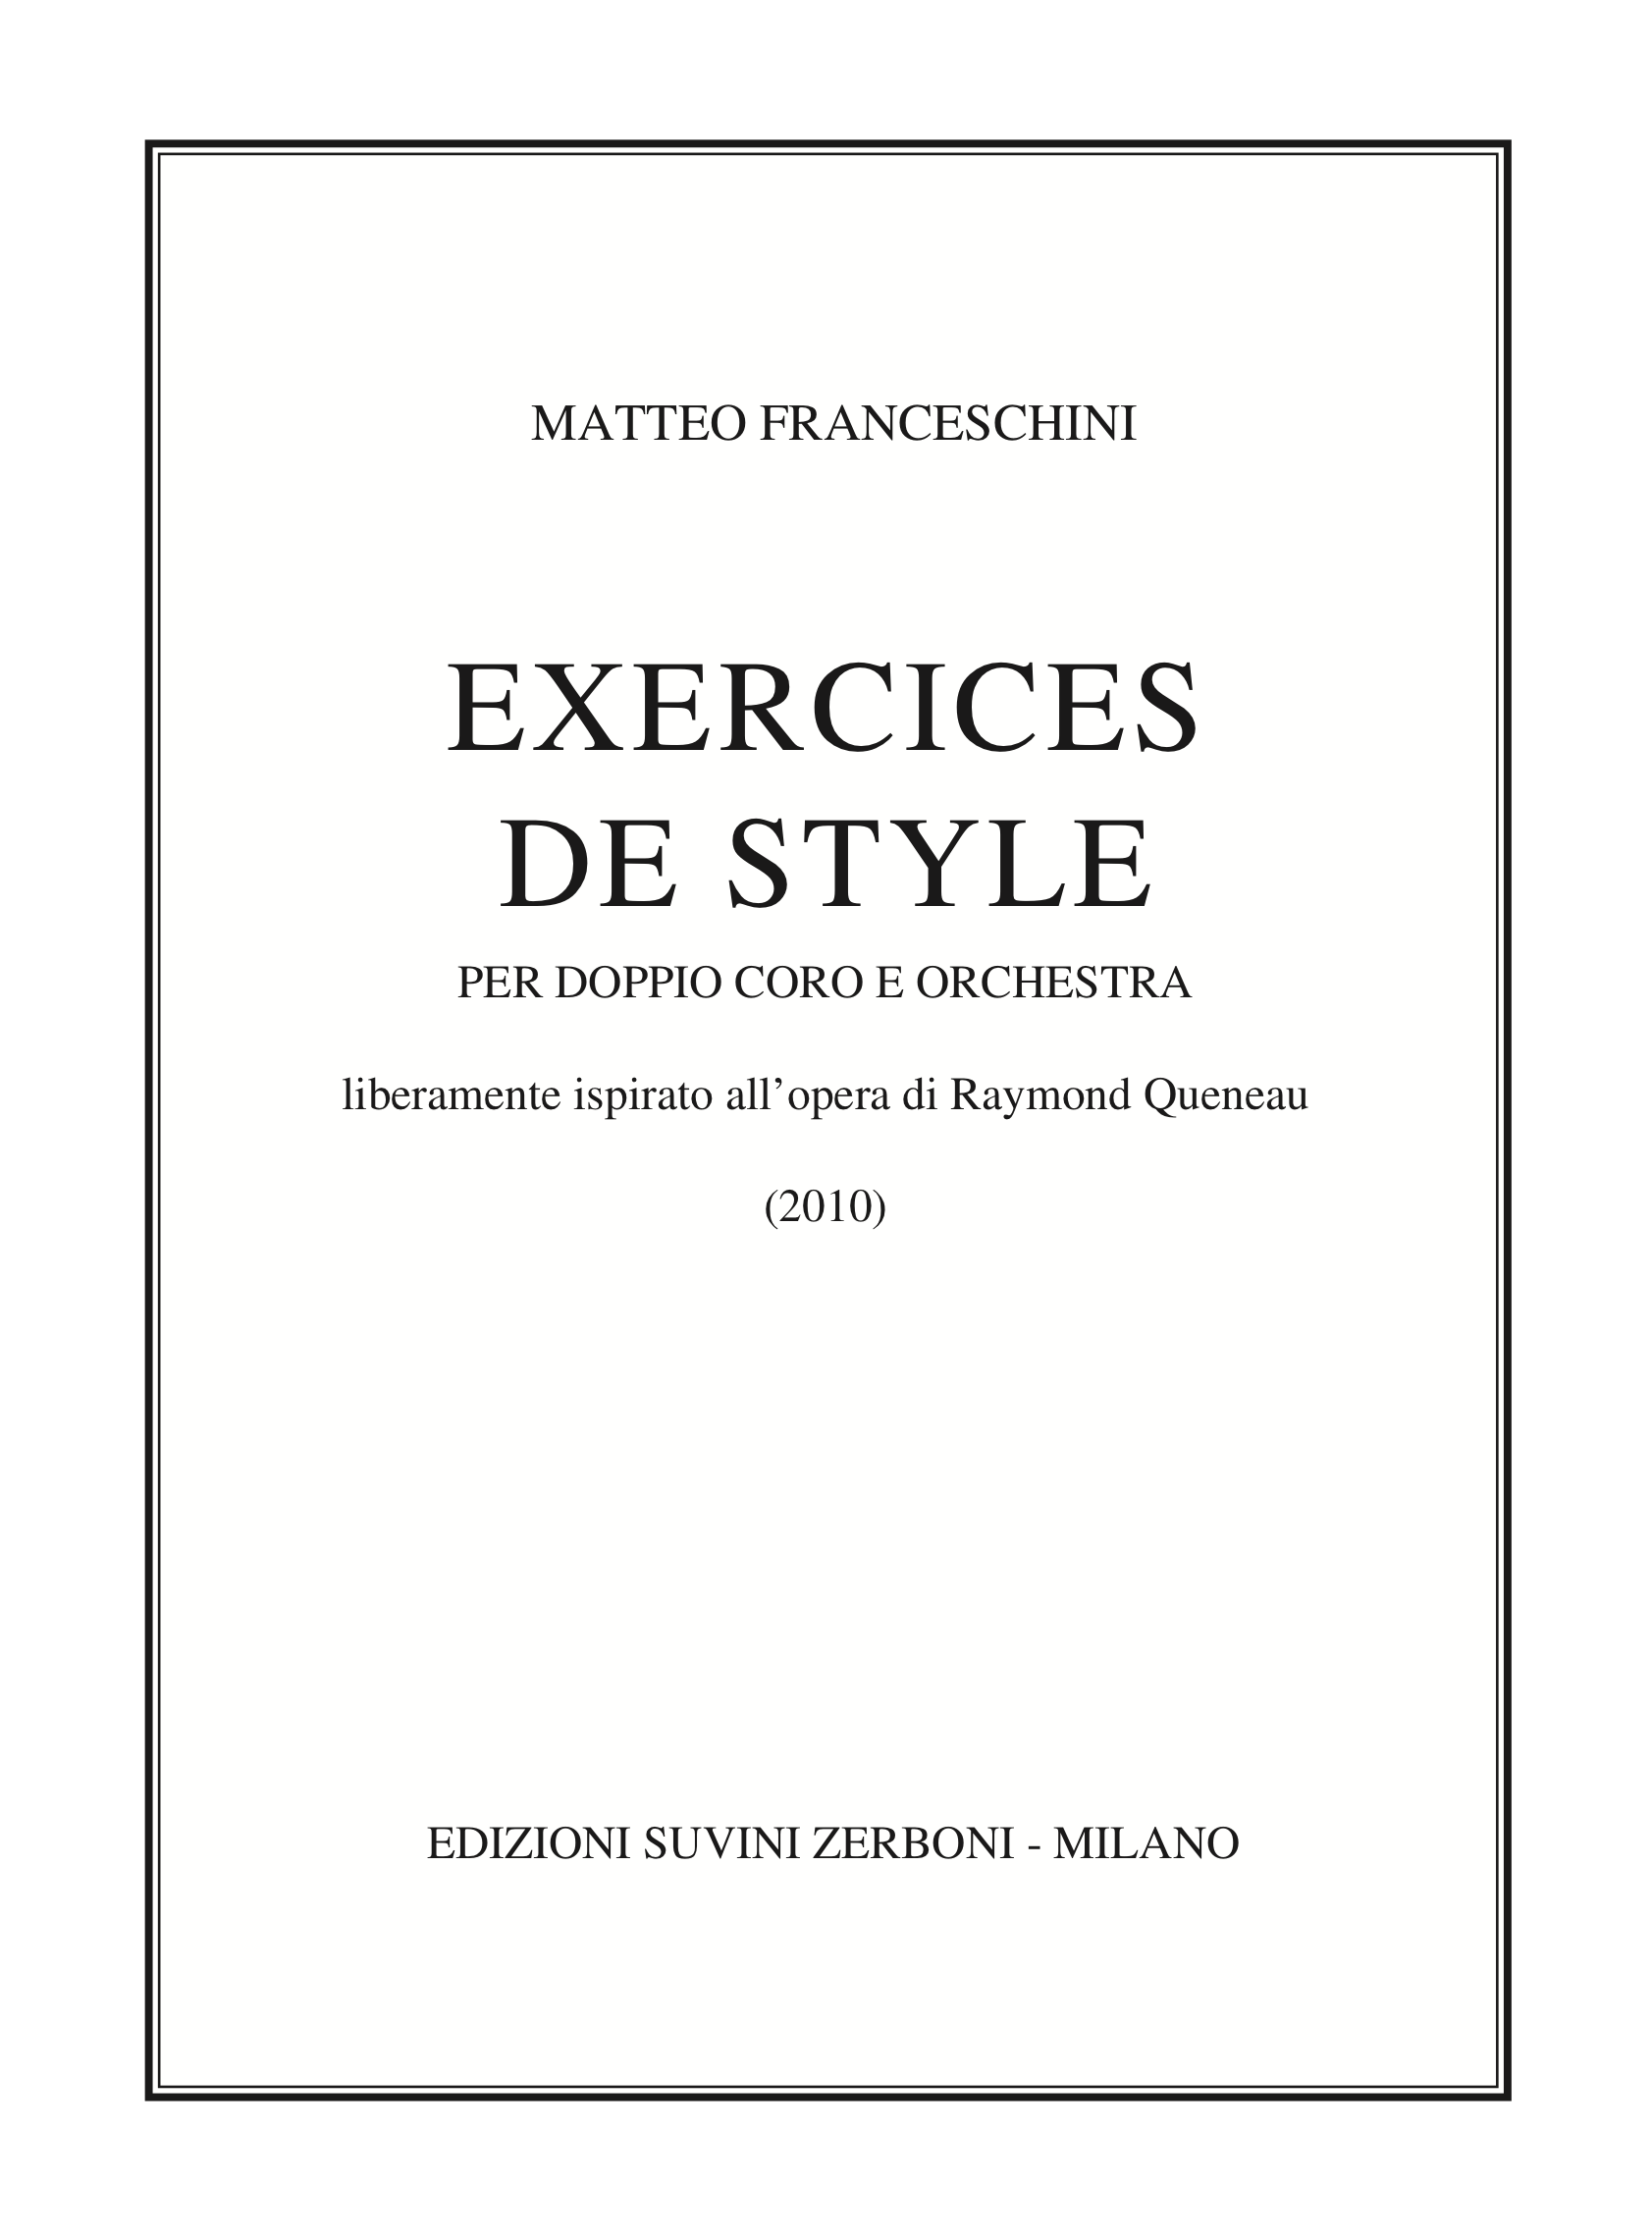 Exercices de style_Franceschini 1